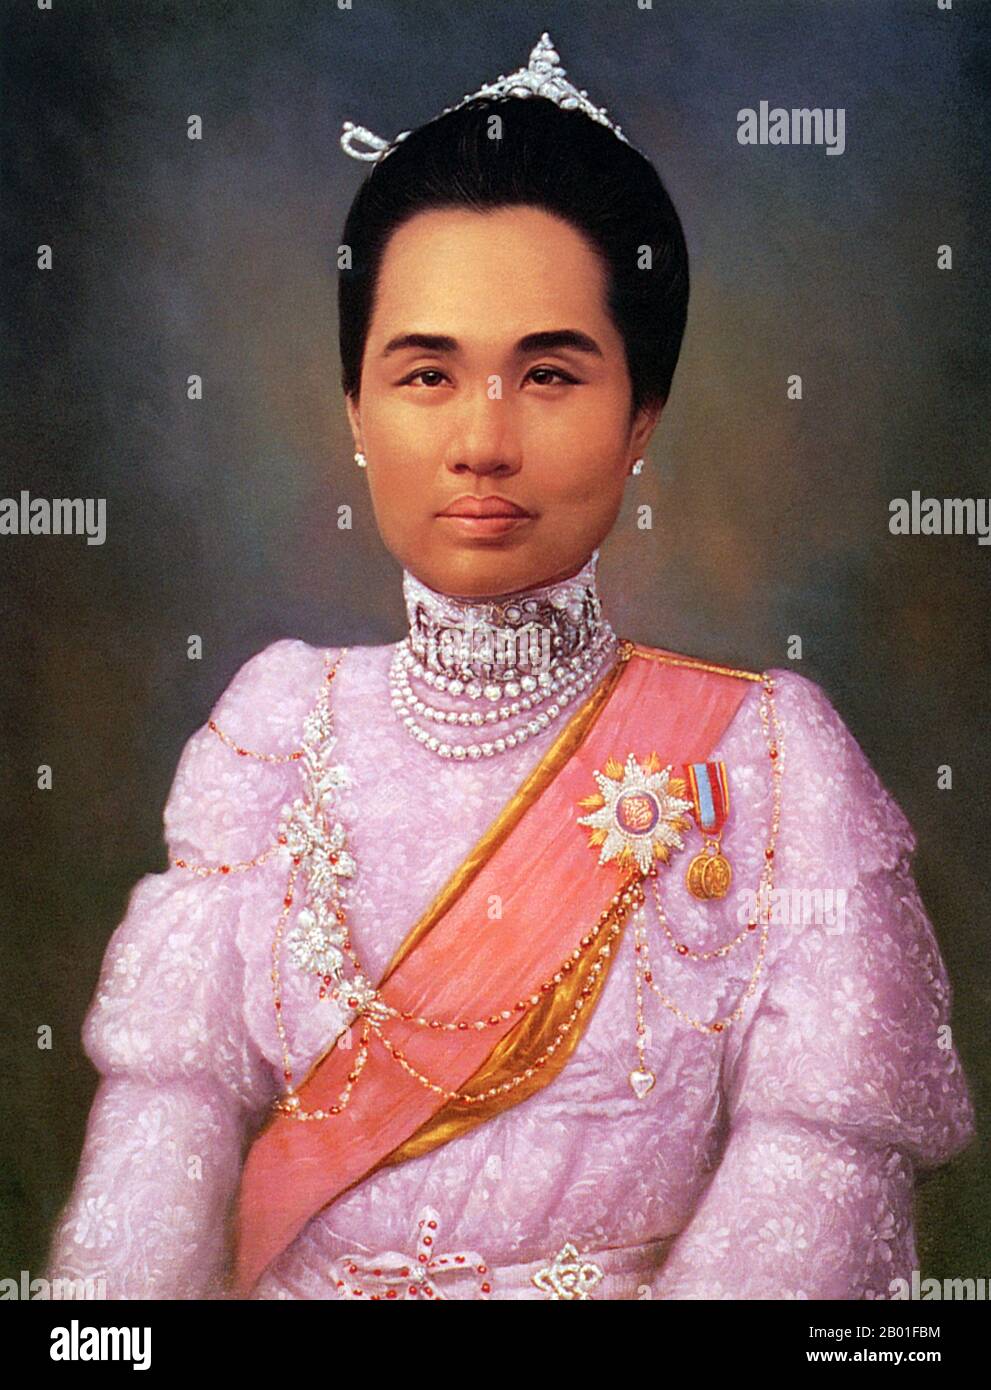 La princesa Dara Rasmi (26 de agosto de 1873 – 9 de diciembre de 1933), fue la princesa de Chiang Mai y Siam (más tarde Tailandia) y la hija del rey Inthaianon y la reina Thipkraisorn Rajadewi de Chang Mai, un sción de la dinastía Chao Chet Ton. Fue una de las princesas consortes de Chulalongkorn, rey Rama V de Siam y dio a luz a una hija del rey Chulalongkorn, la princesa Vimolnaka Nabisi. En 1886, salió de Chiang Mai para entrar en el Gran Palacio de Bangkok, donde se le dio el título Chao Chom Dara Rasami de la dinastía Chakri. Mientras vivía en el Gran Palacio, Dara Rasami y el Ladi Foto de stock